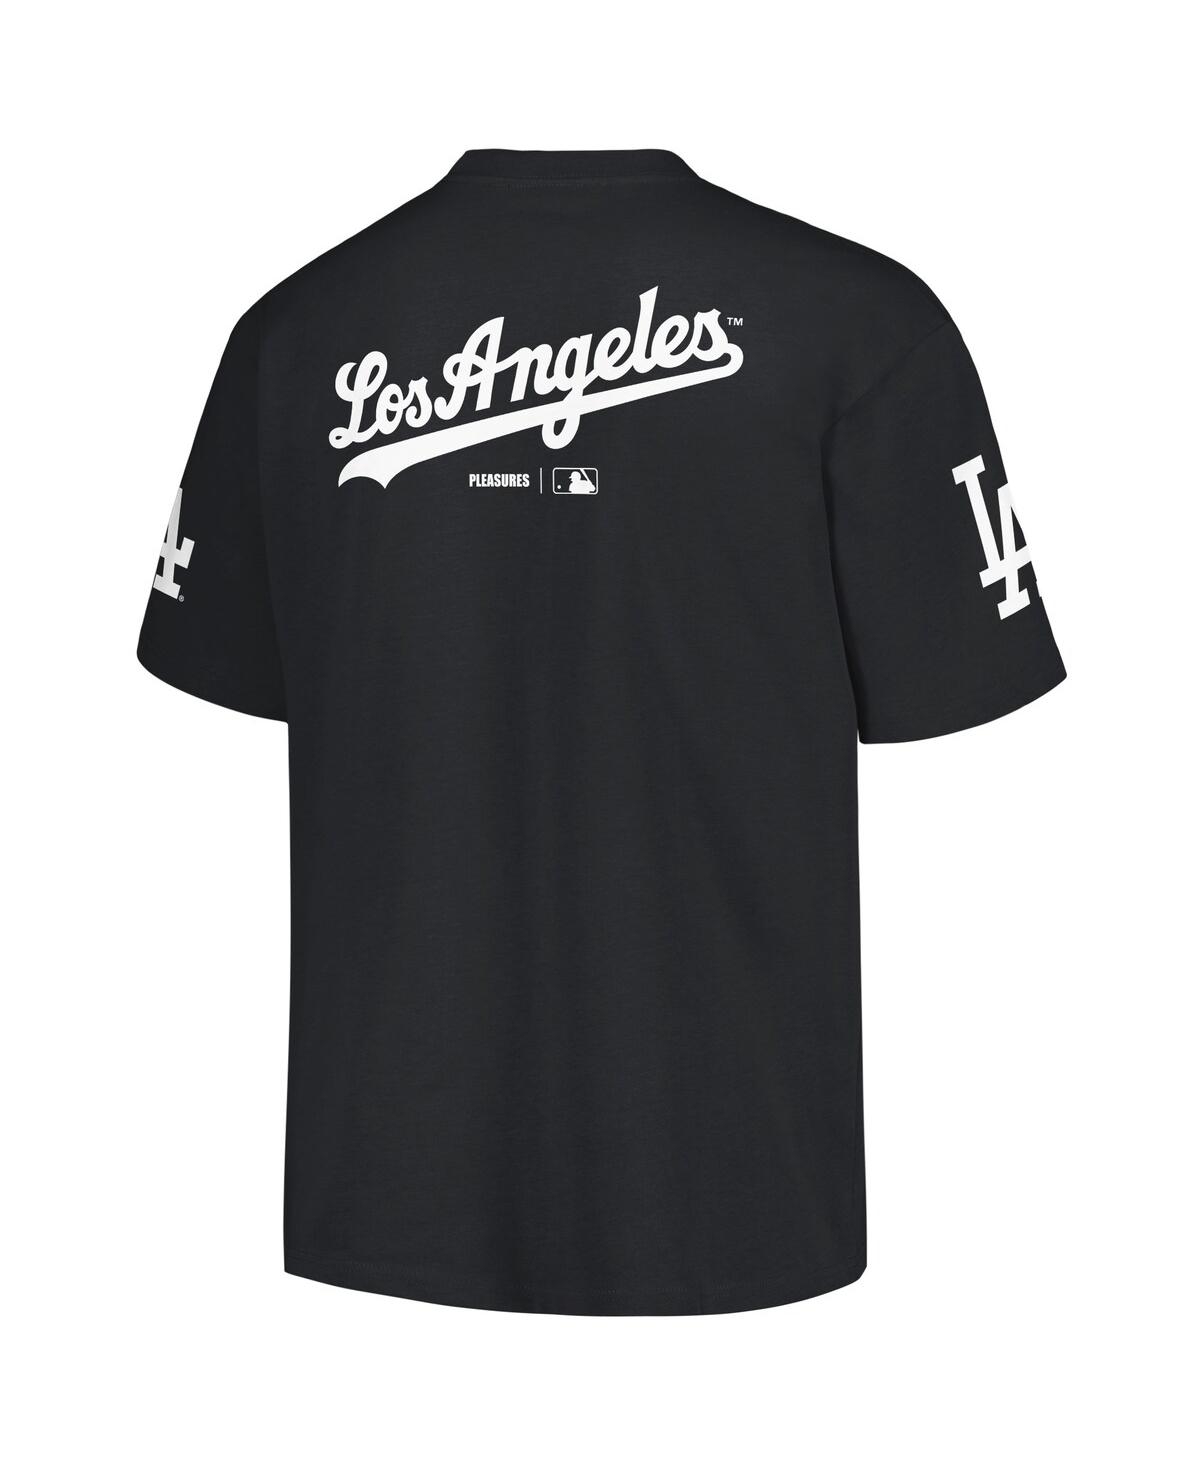 Shop Pleasures Men's  Black Los Angeles Dodgers Team T-shirt